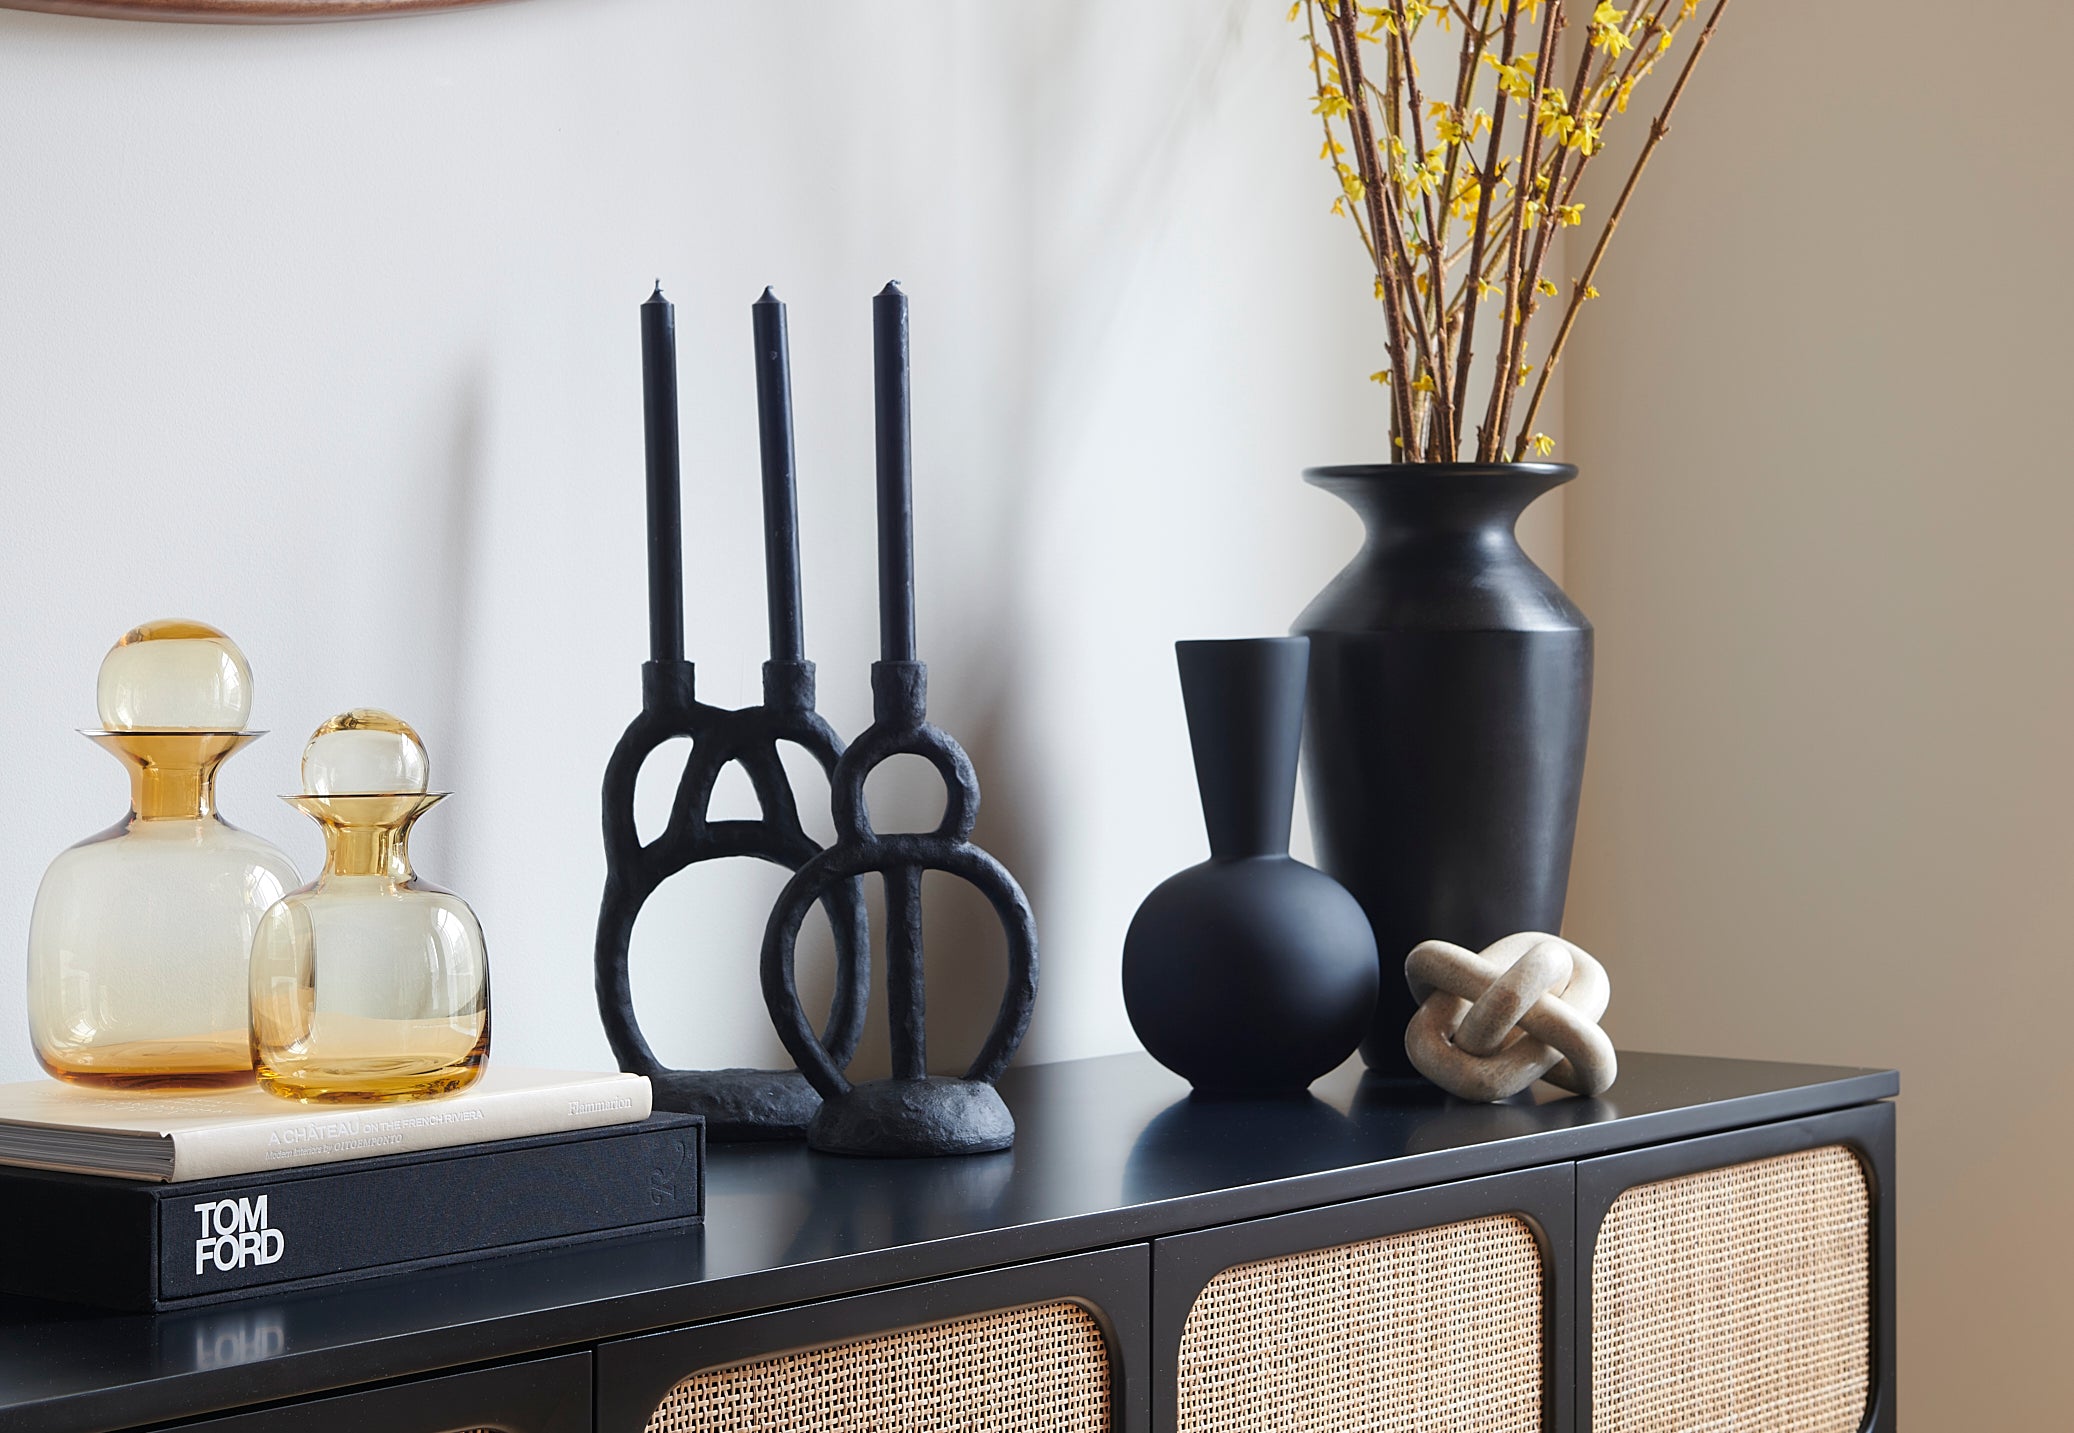 cane cabinet, black vases, tom ford, contemporary design, interior designer, interior decor, home design, home decor